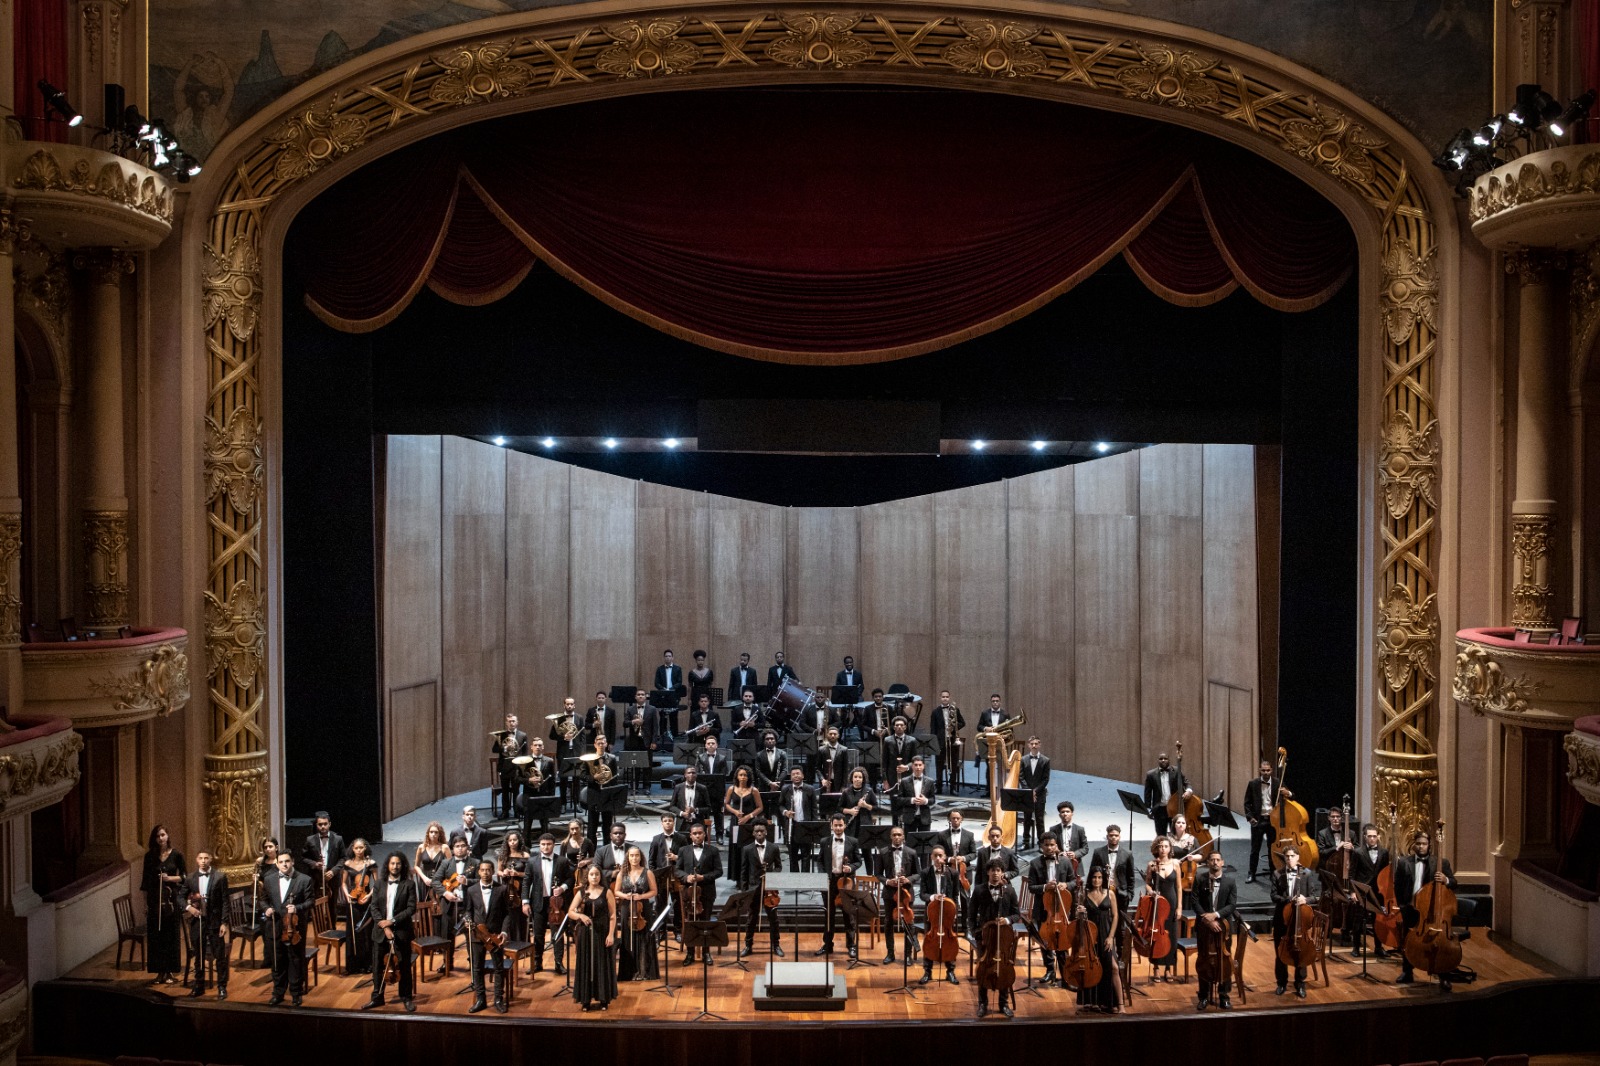 Sala Cecília Meireles recebe a 'Orquestra Sinfônica Jovem do Rio de Janeiro' (Foto: Divulgação)